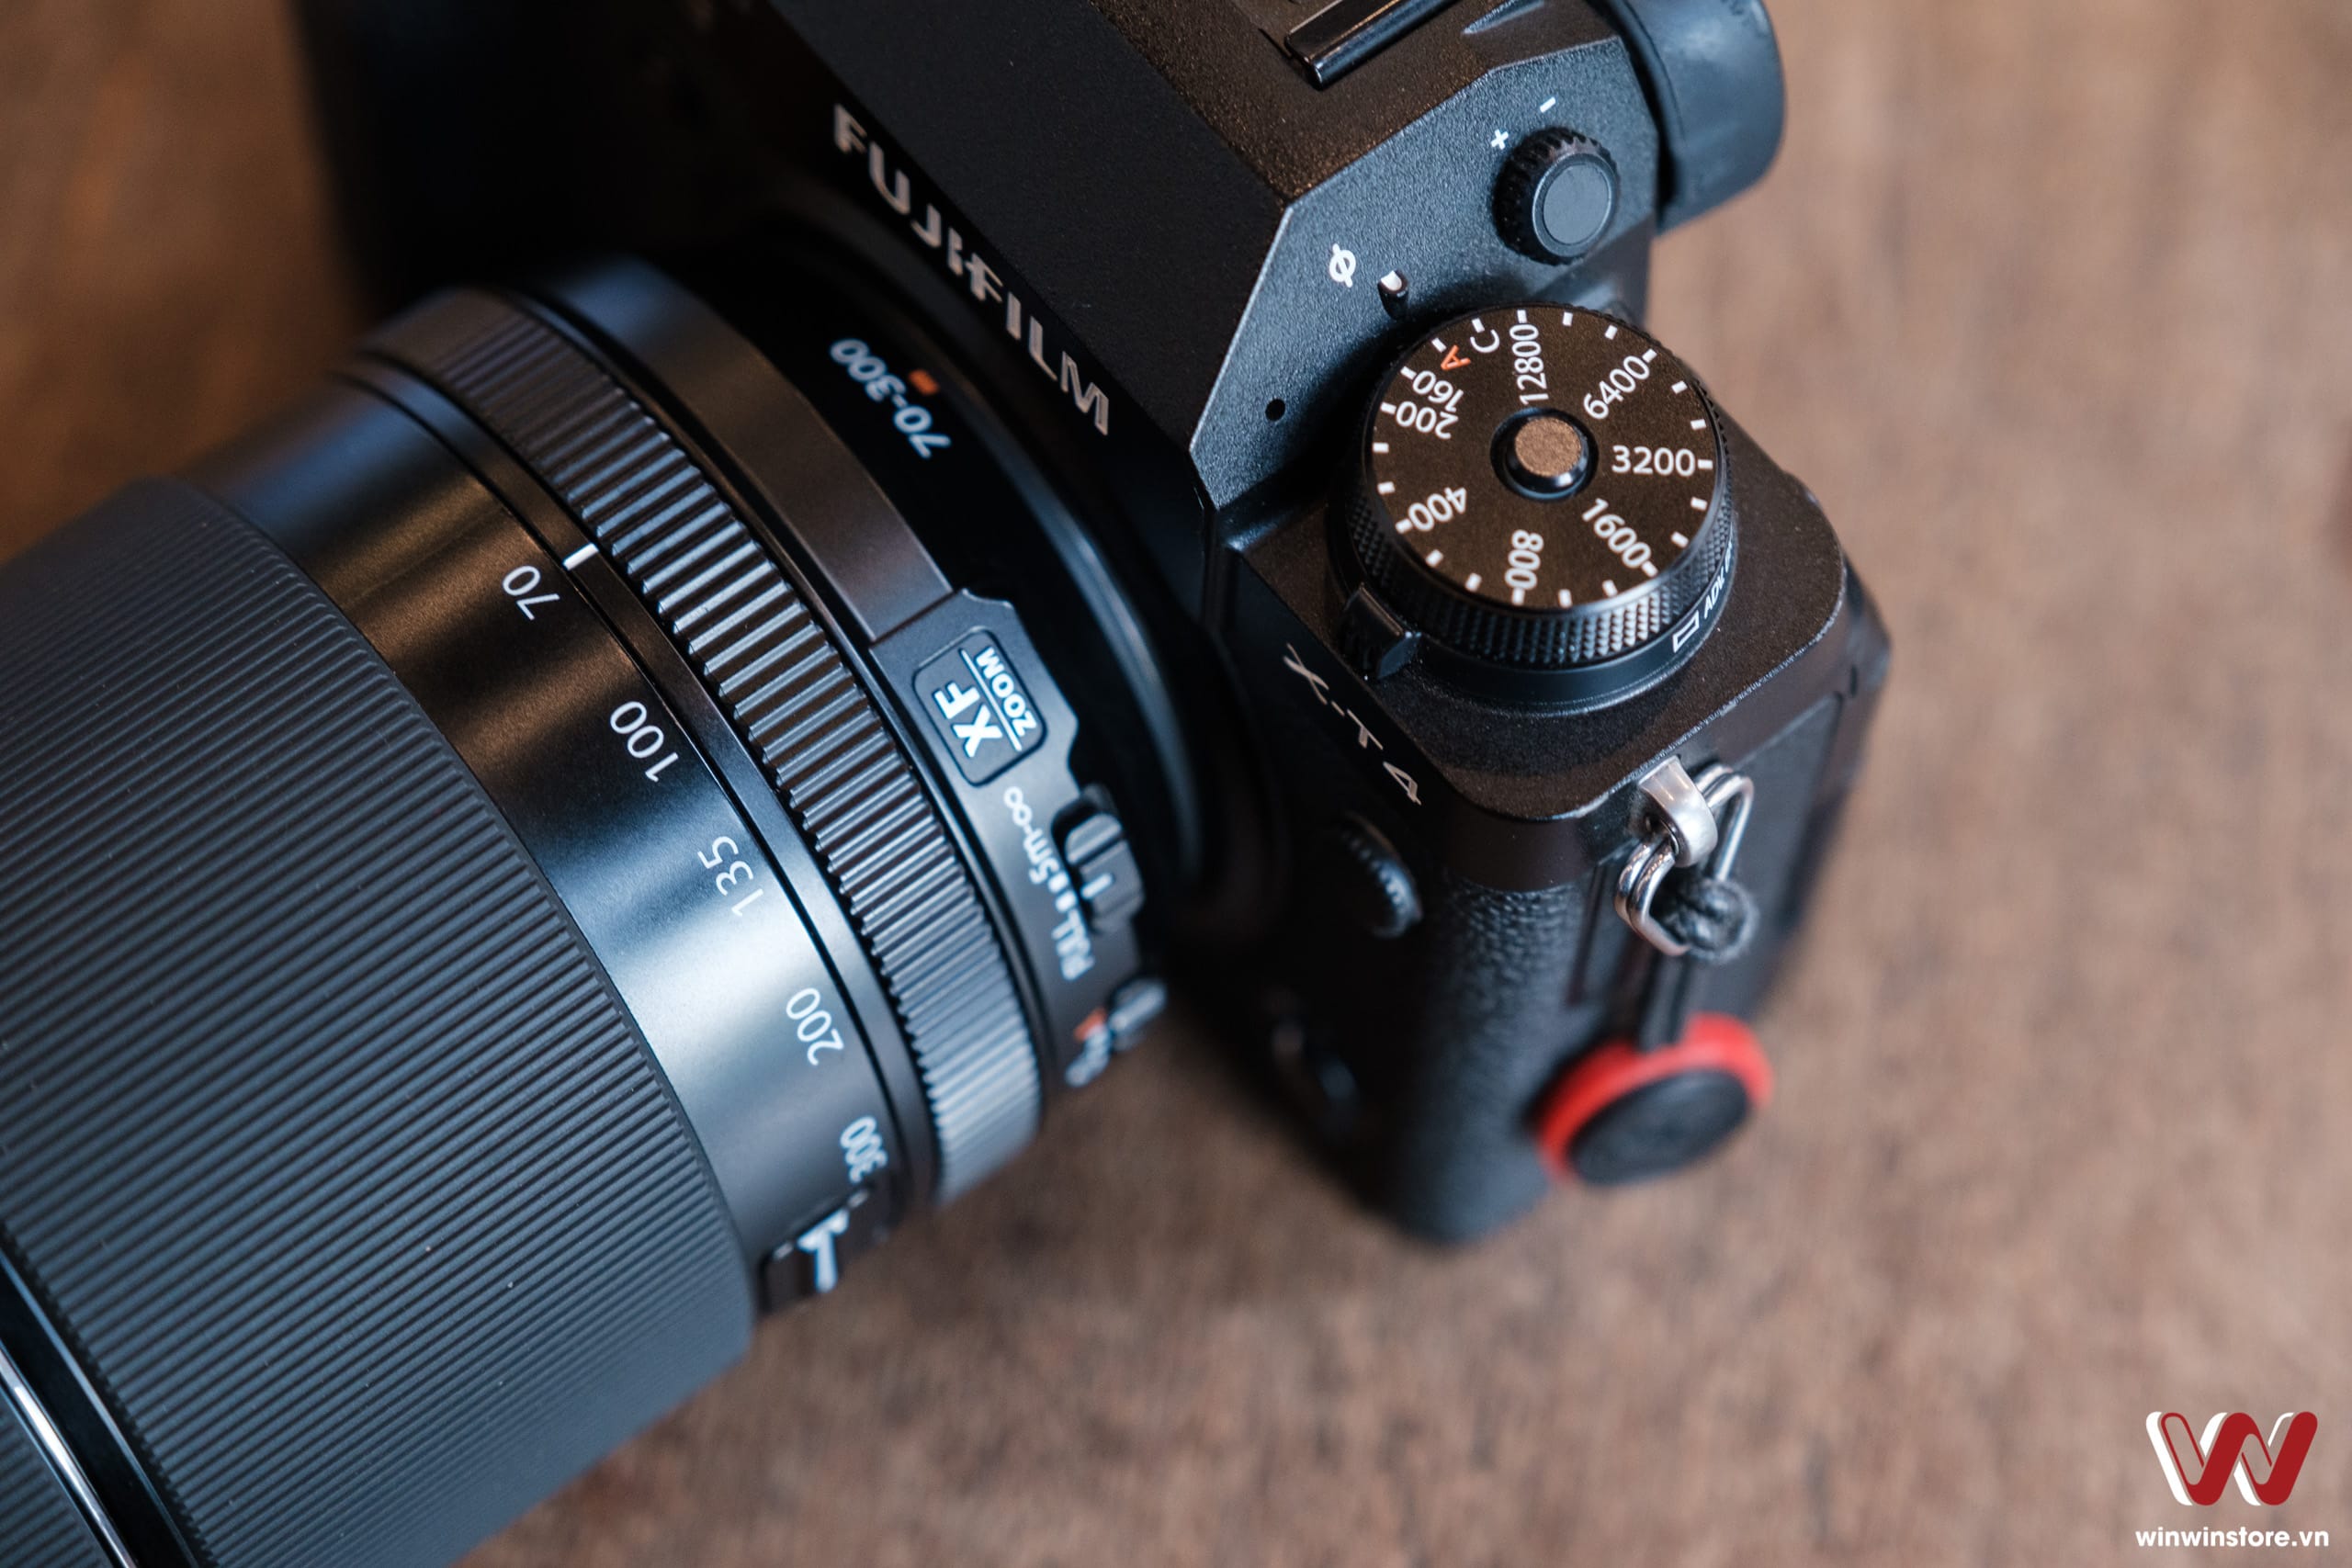 Những chiếc ống kính tốt nhất dành cho máy ảnh Fujifilm trong năm 2021 này